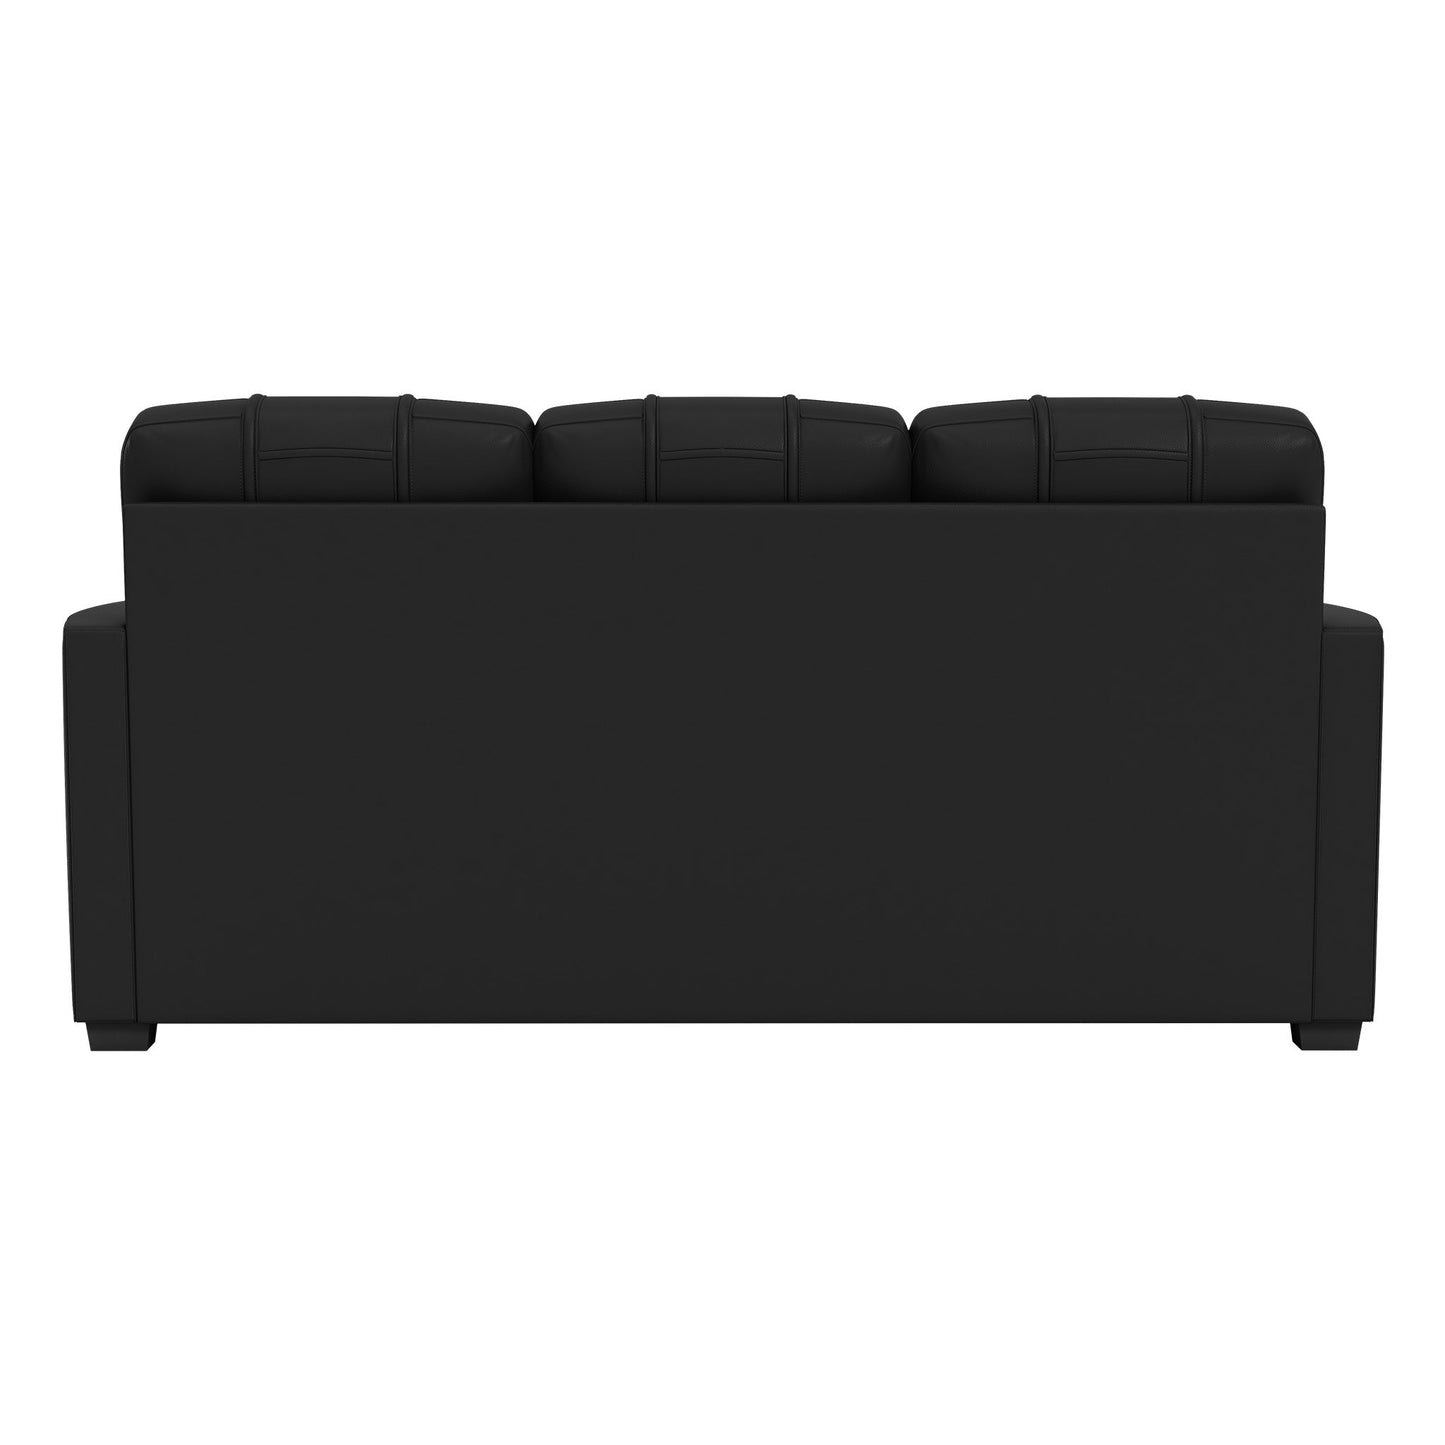 Silver Sofa with  Houston Texans Primary Logo